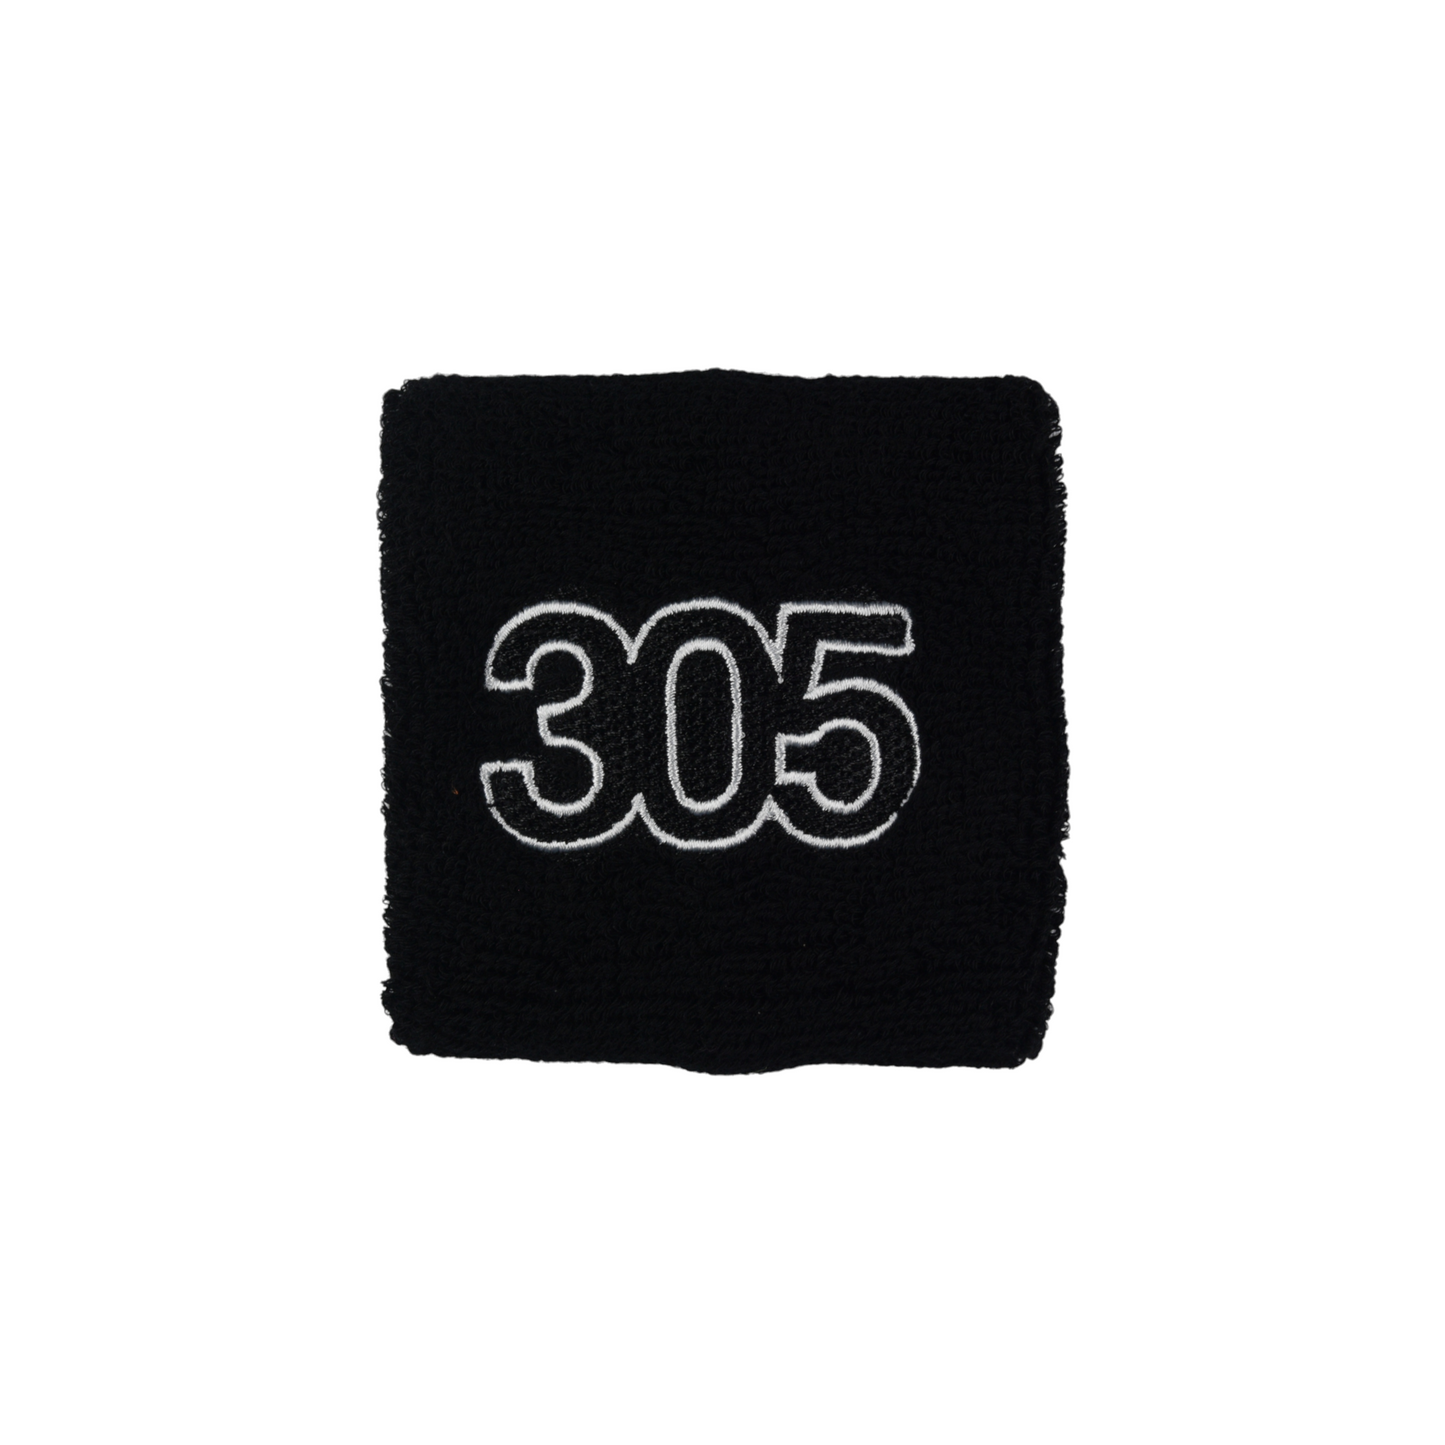 305 Slim Sweatband